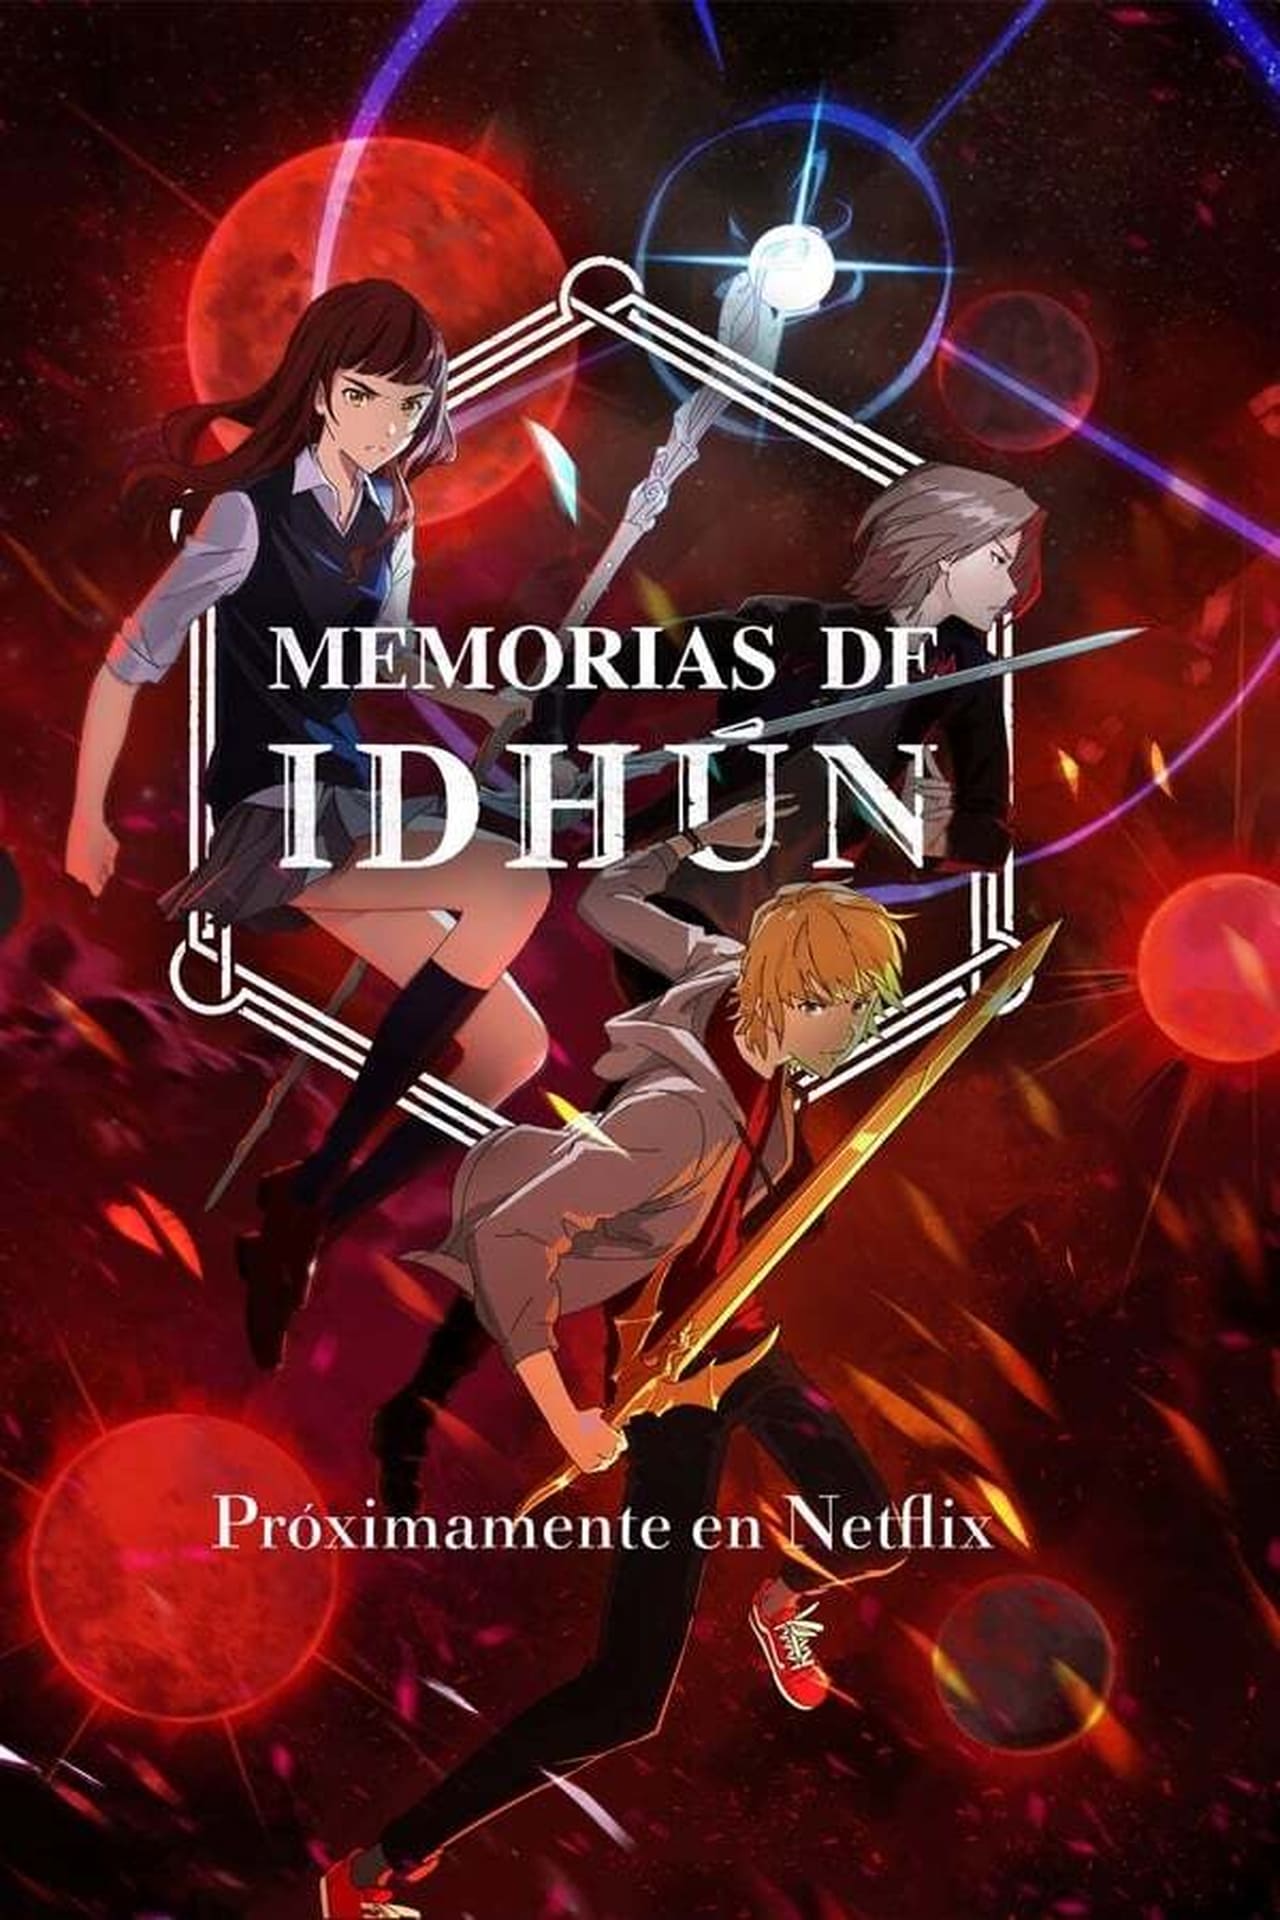 Image Memorias de Idhún